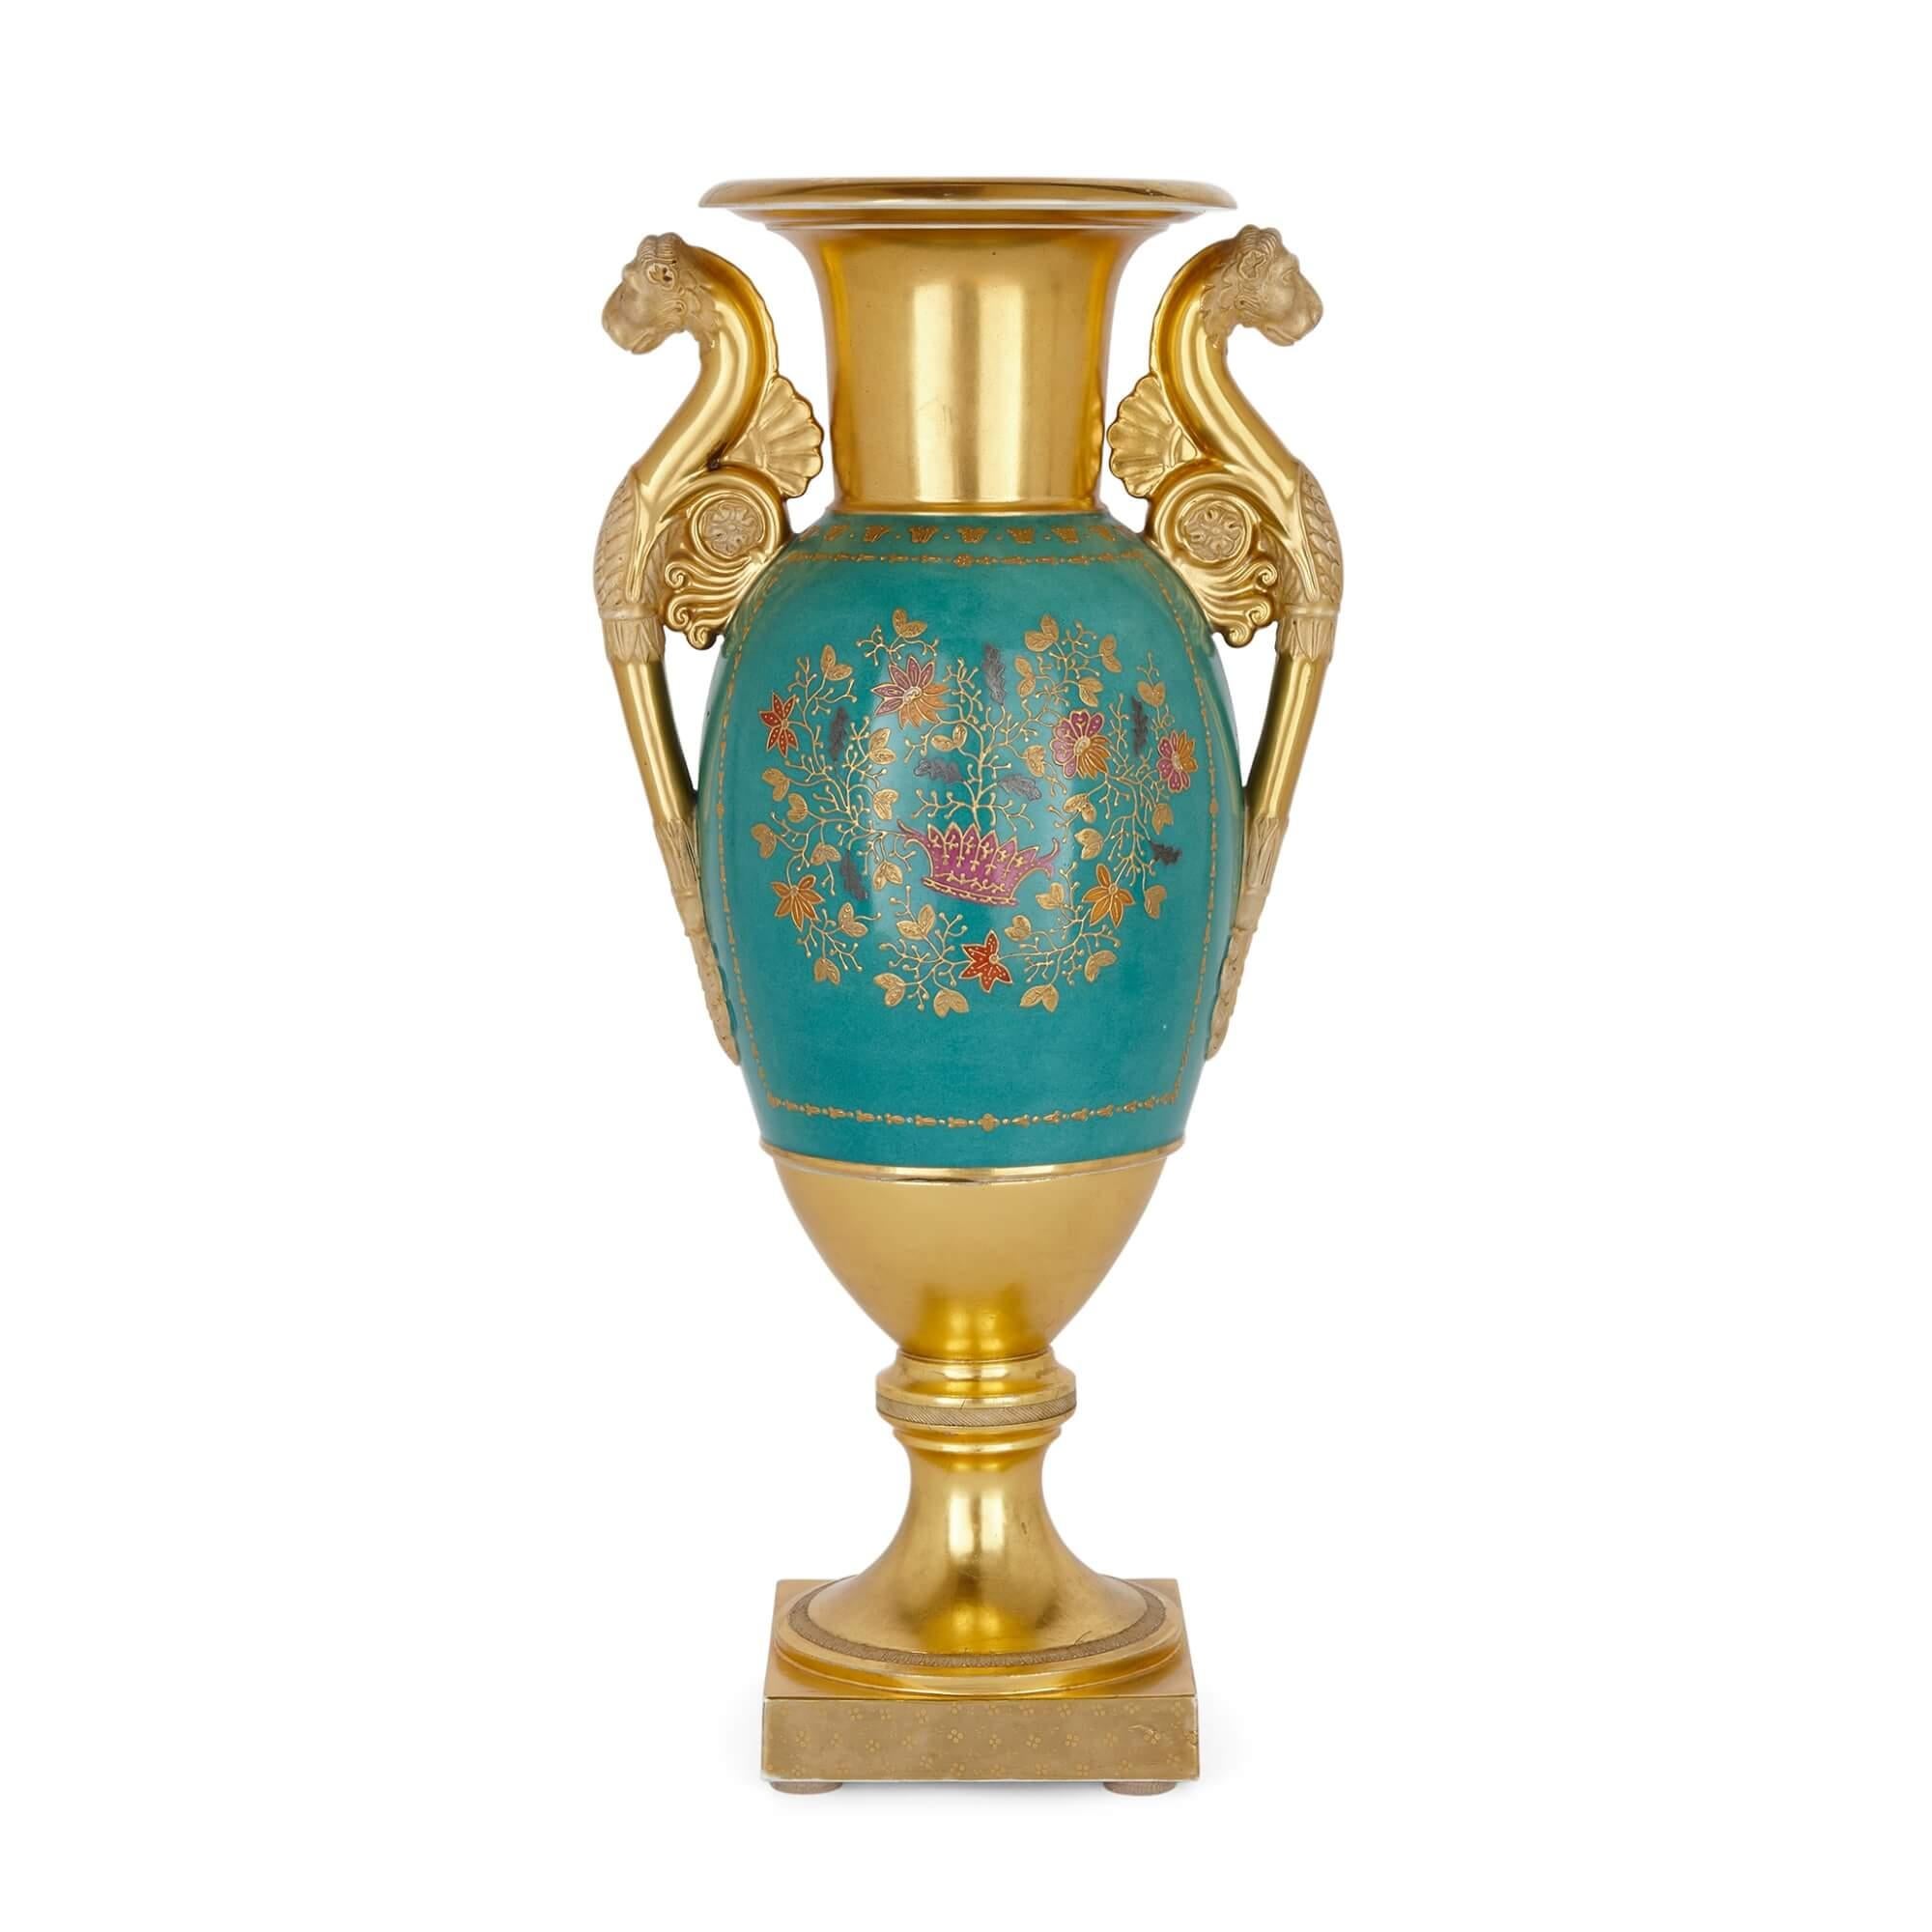 Eine feine und bedeutende vergoldete Porzellanvase der Gardner Factory
Russisch, um 1830
Höhe 43cm, Breite 21cm, Tiefe 15cm

Diese schöne antike Vase ist das Werk der berühmten russischen Gardner-Fabrik (gegründet 1766), die als erste